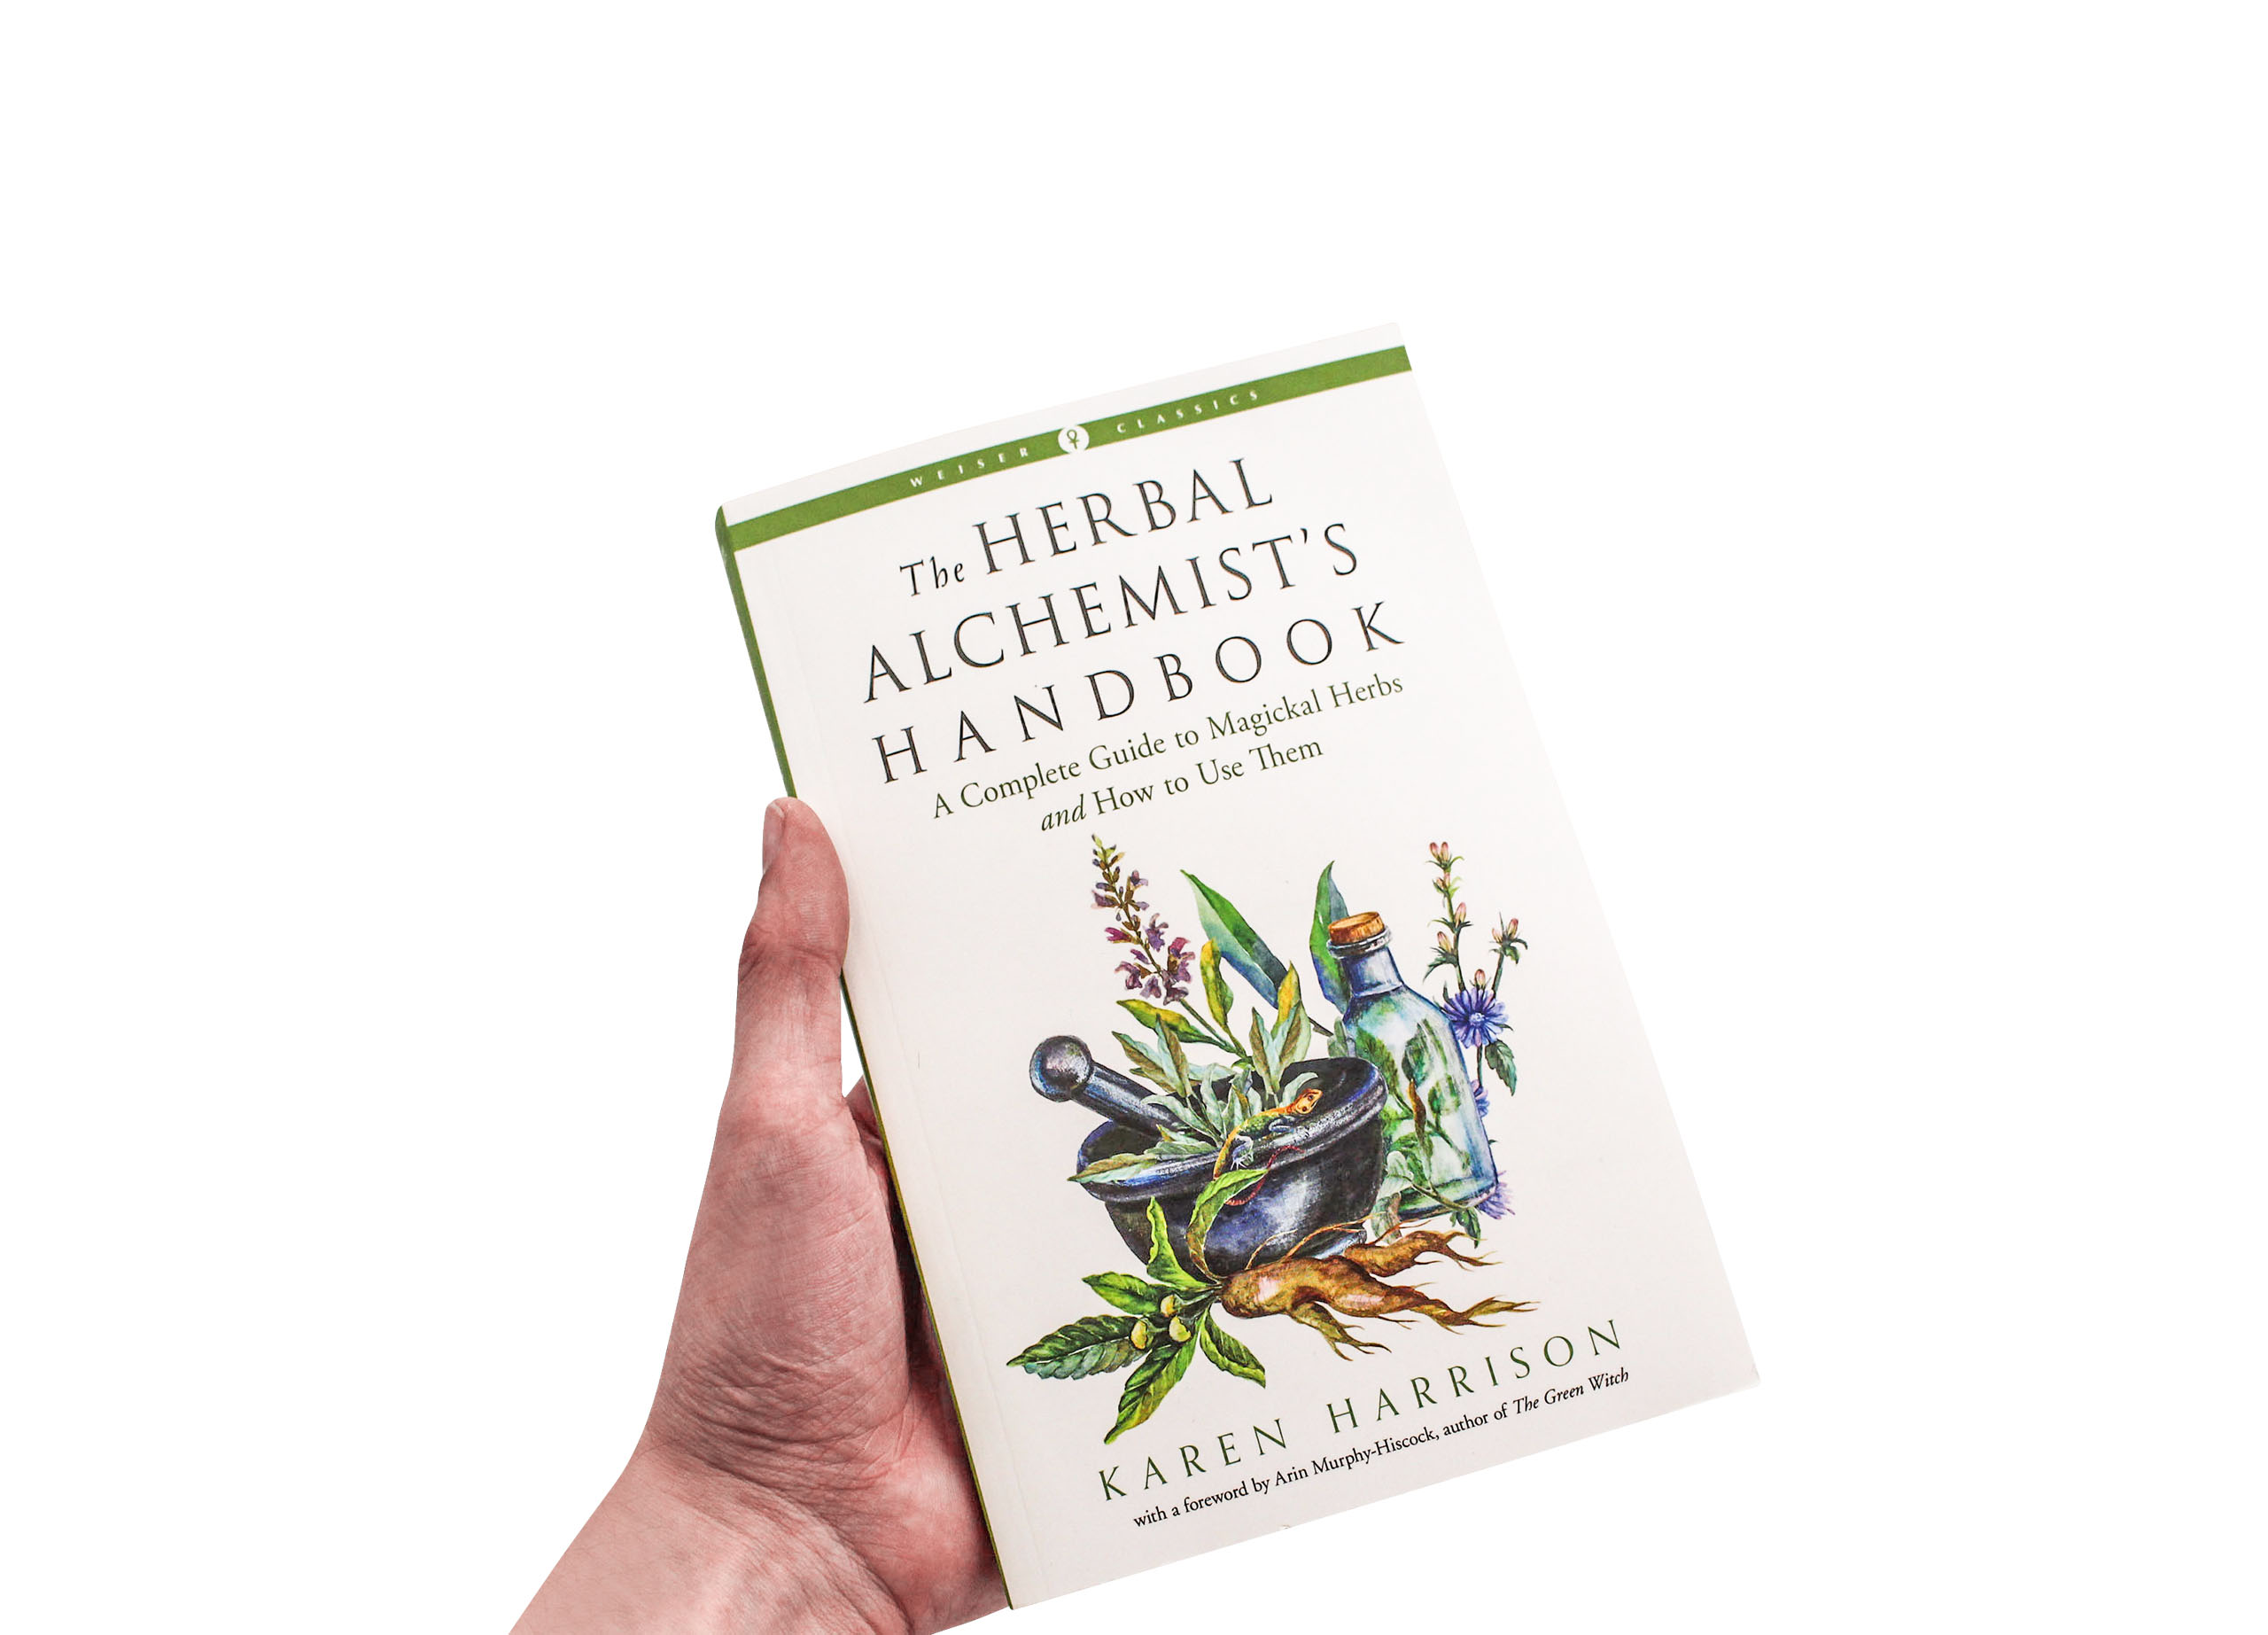 The Herbal Alchemist's Handbook - Crystal Dreams